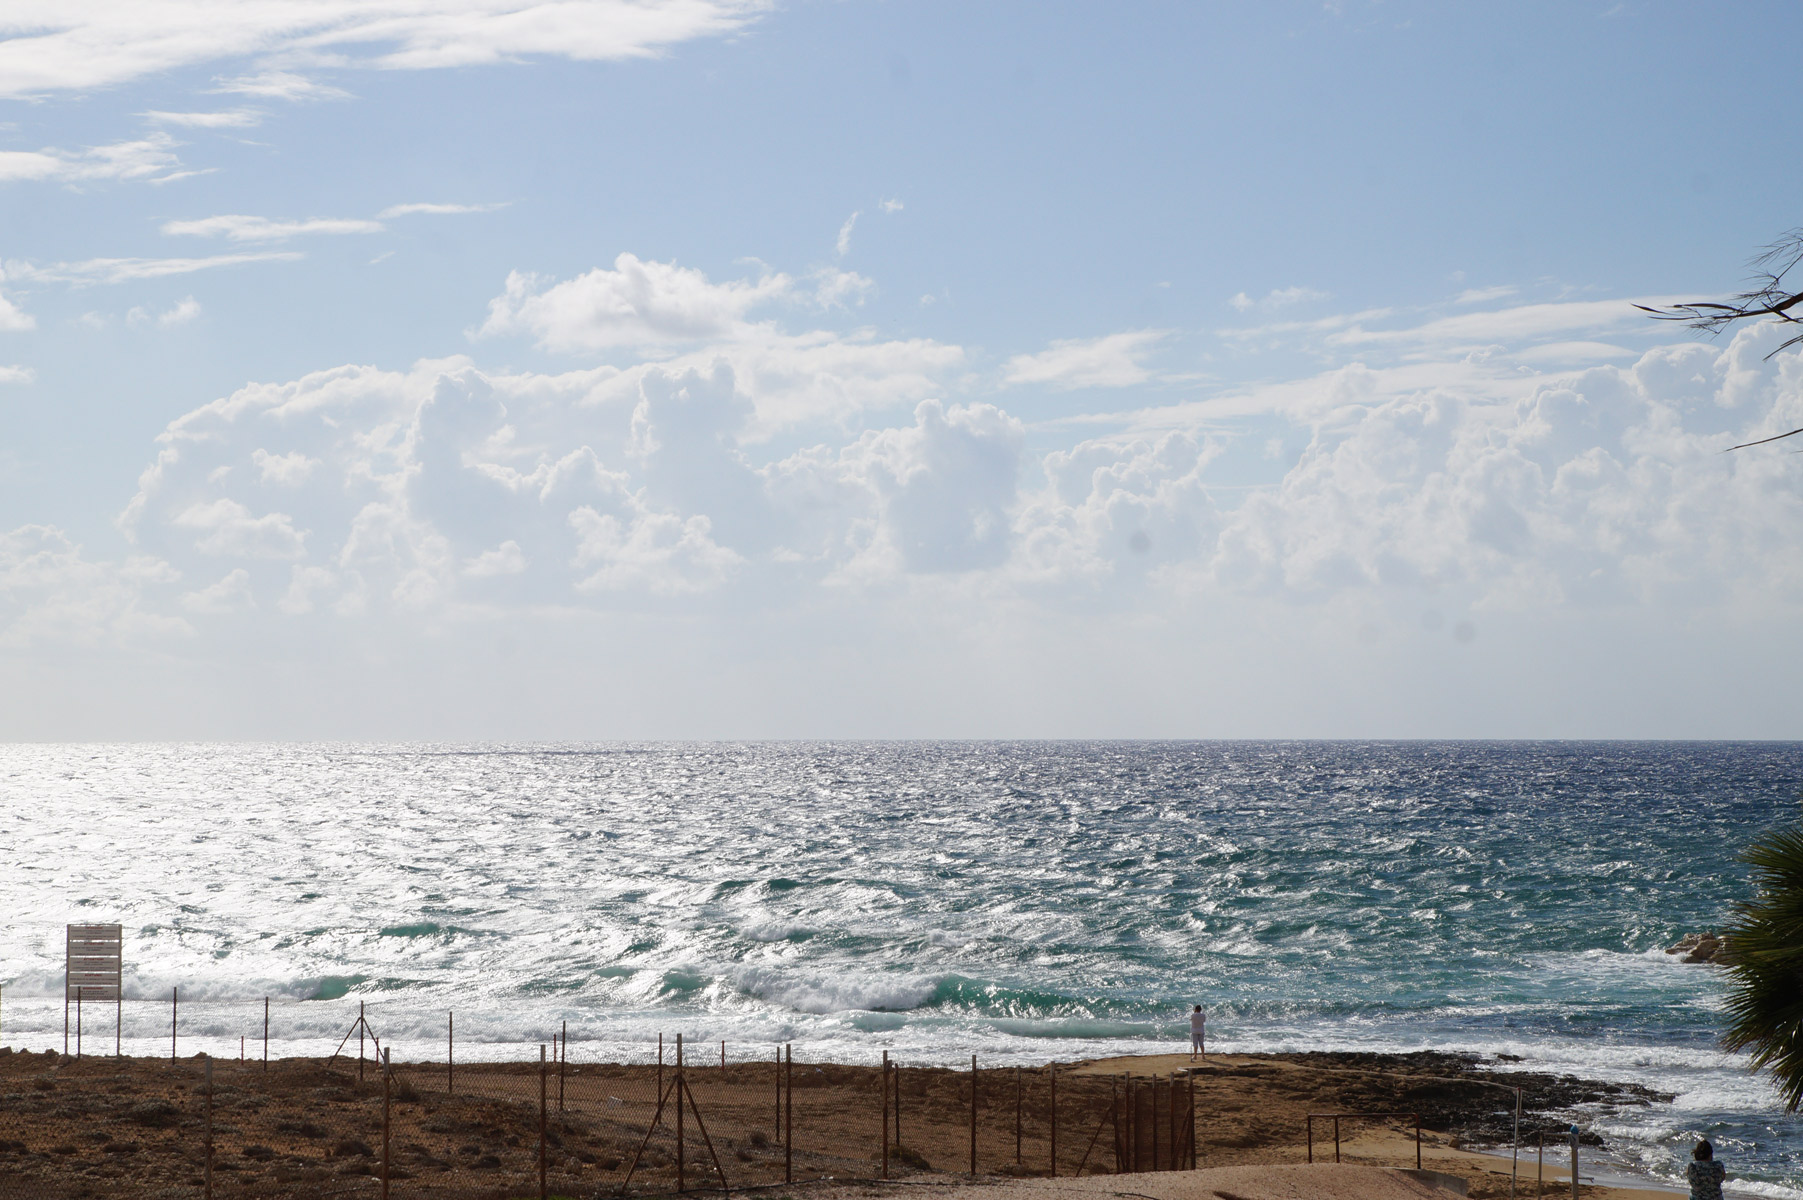 Море сегодня не располагает к купанию. Штормовой ветер поднял высокие волны.
Пафос, Кипр, осень 2018